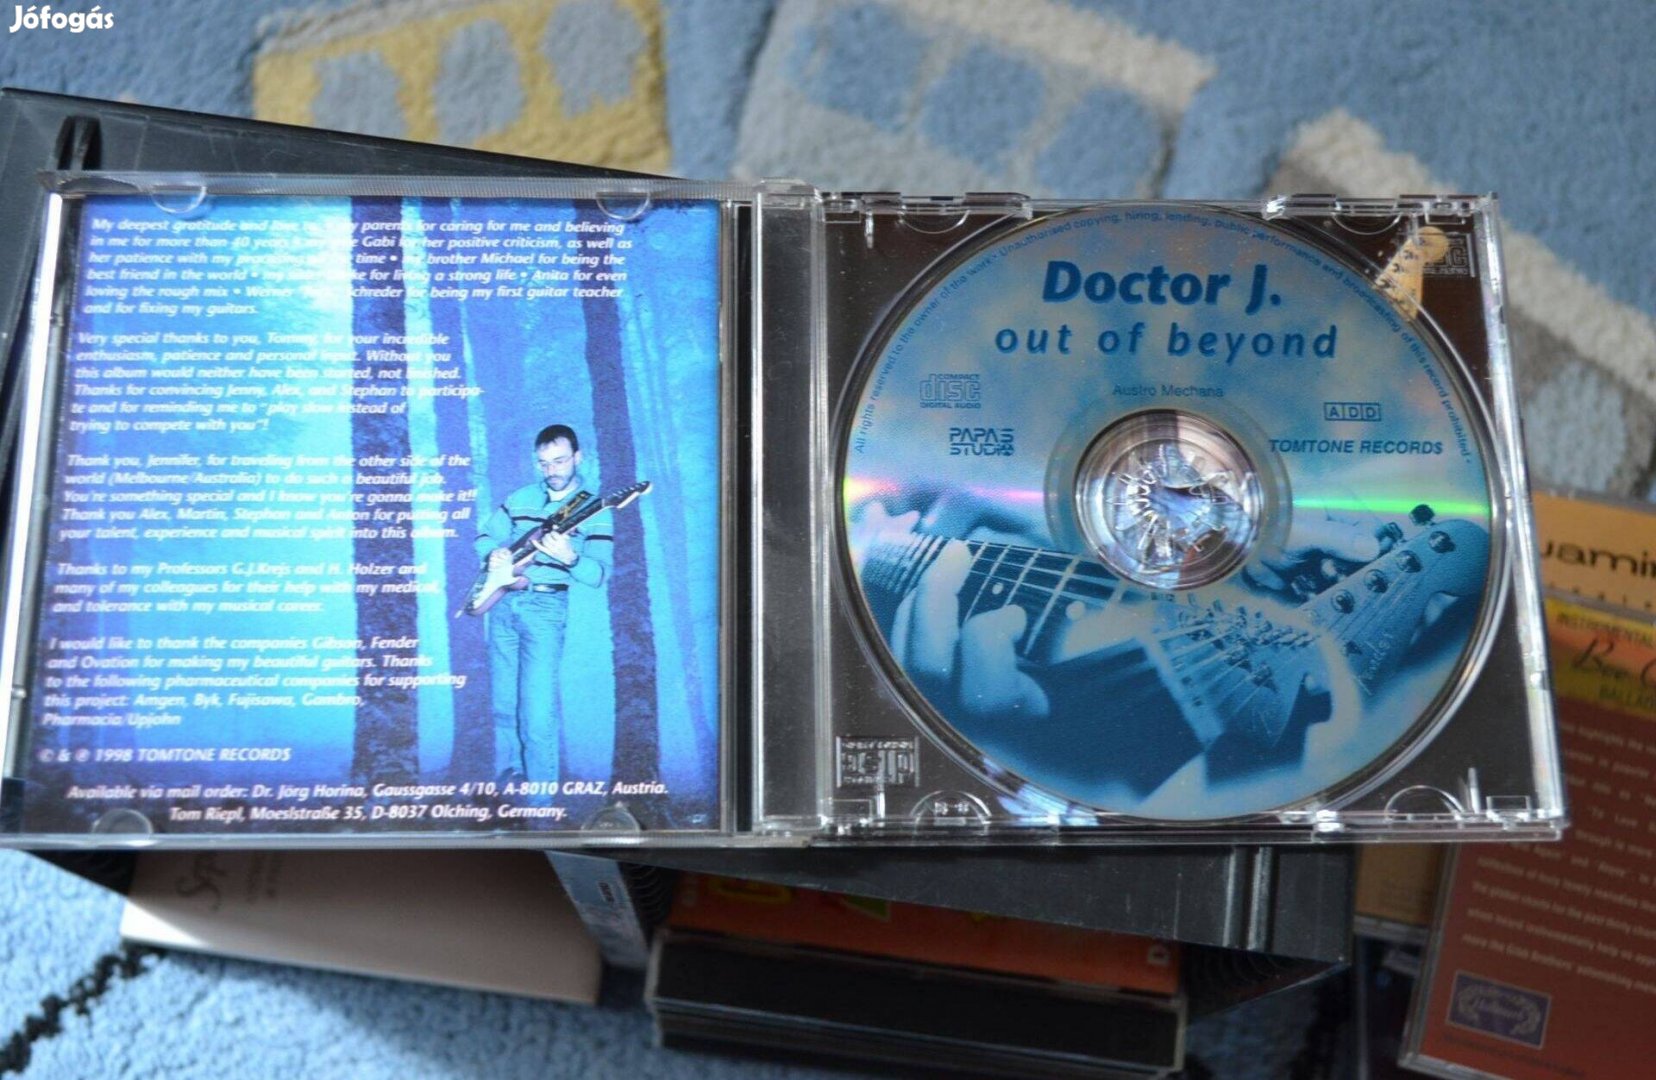 Doctor J. out of beyond cd zene Featuring Jennifer Allas zenei CD